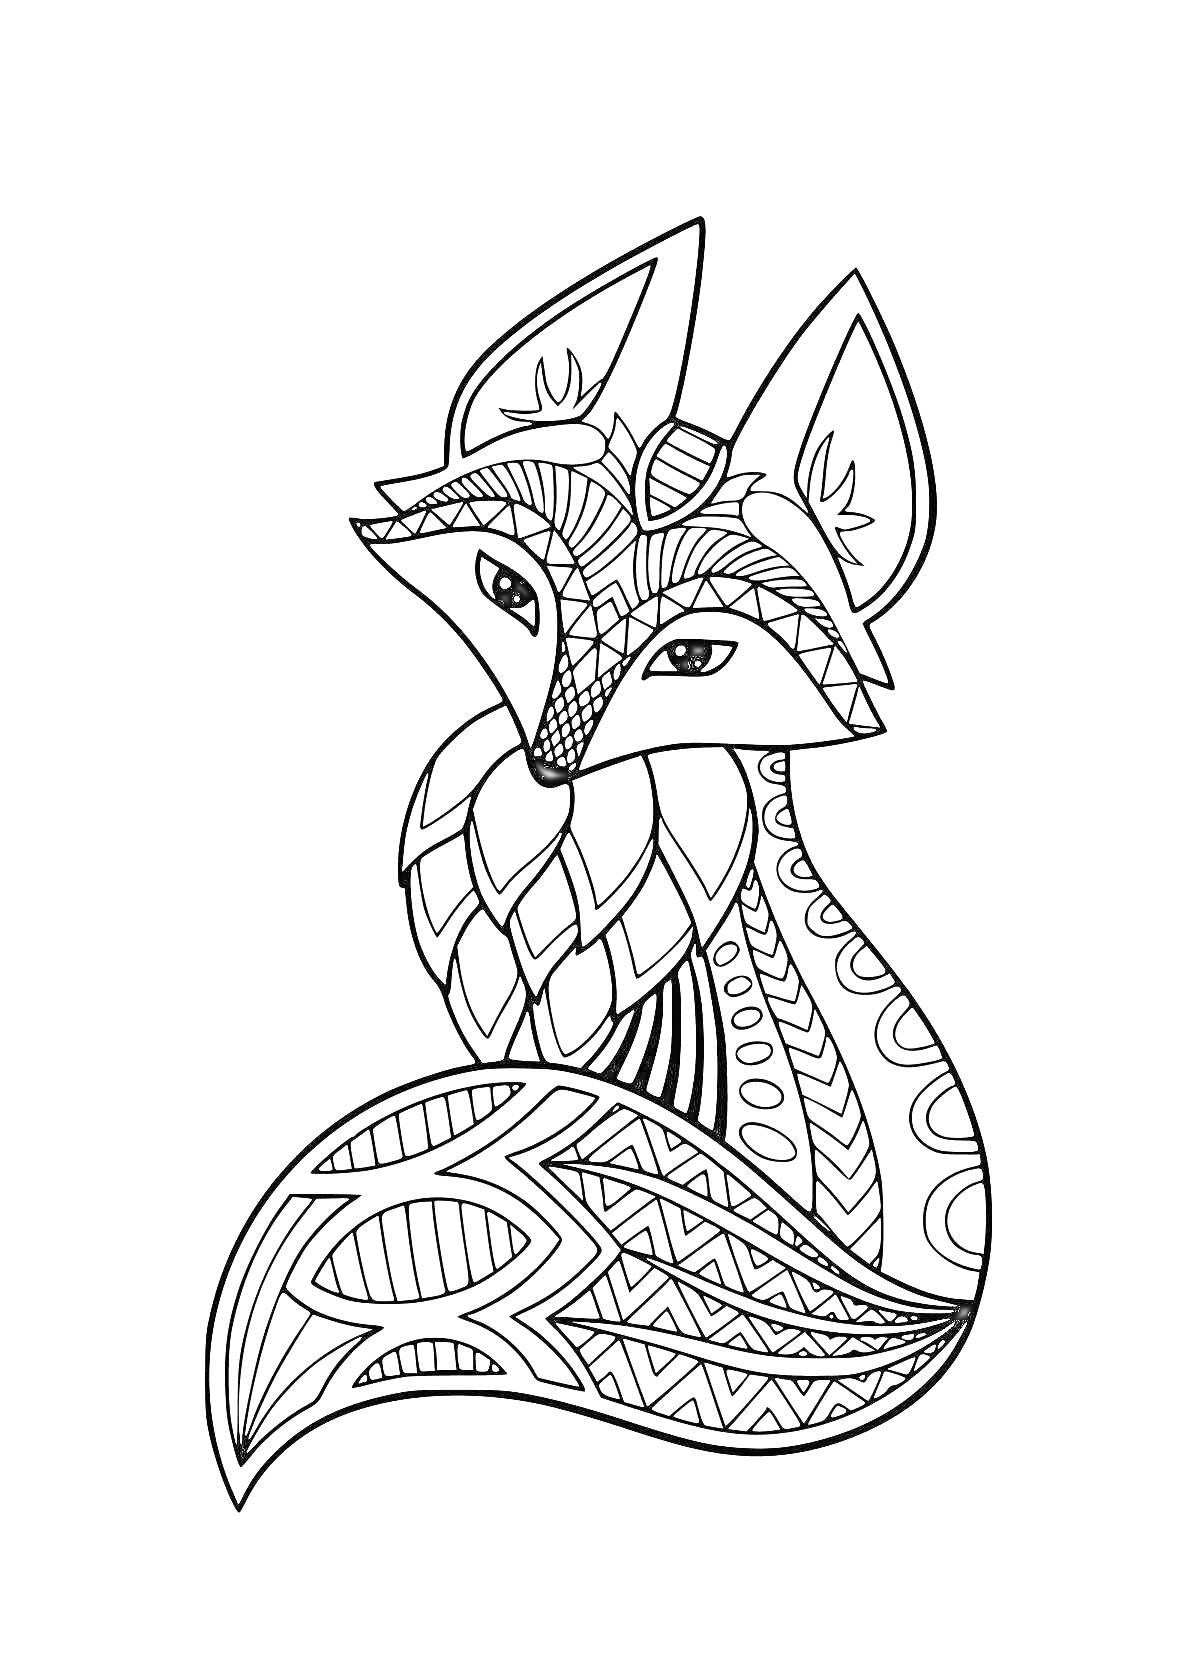 Раскраска Лисичка с узорчатым рисунком, состоящая из геометрических и абстрактных узоров